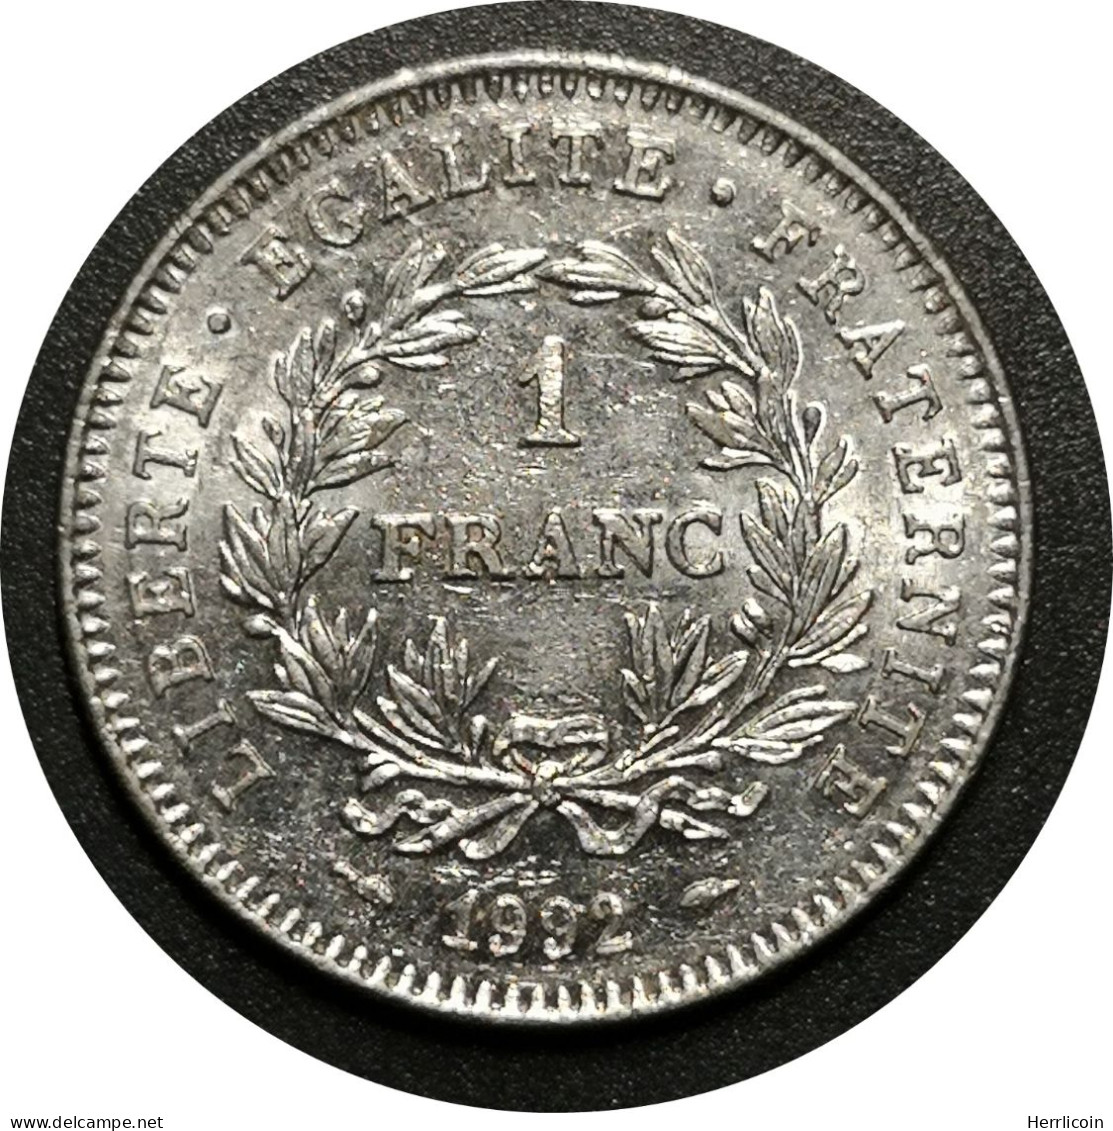 Monnaie France - 1992 - 1 Franc République Nickel - Commemorative